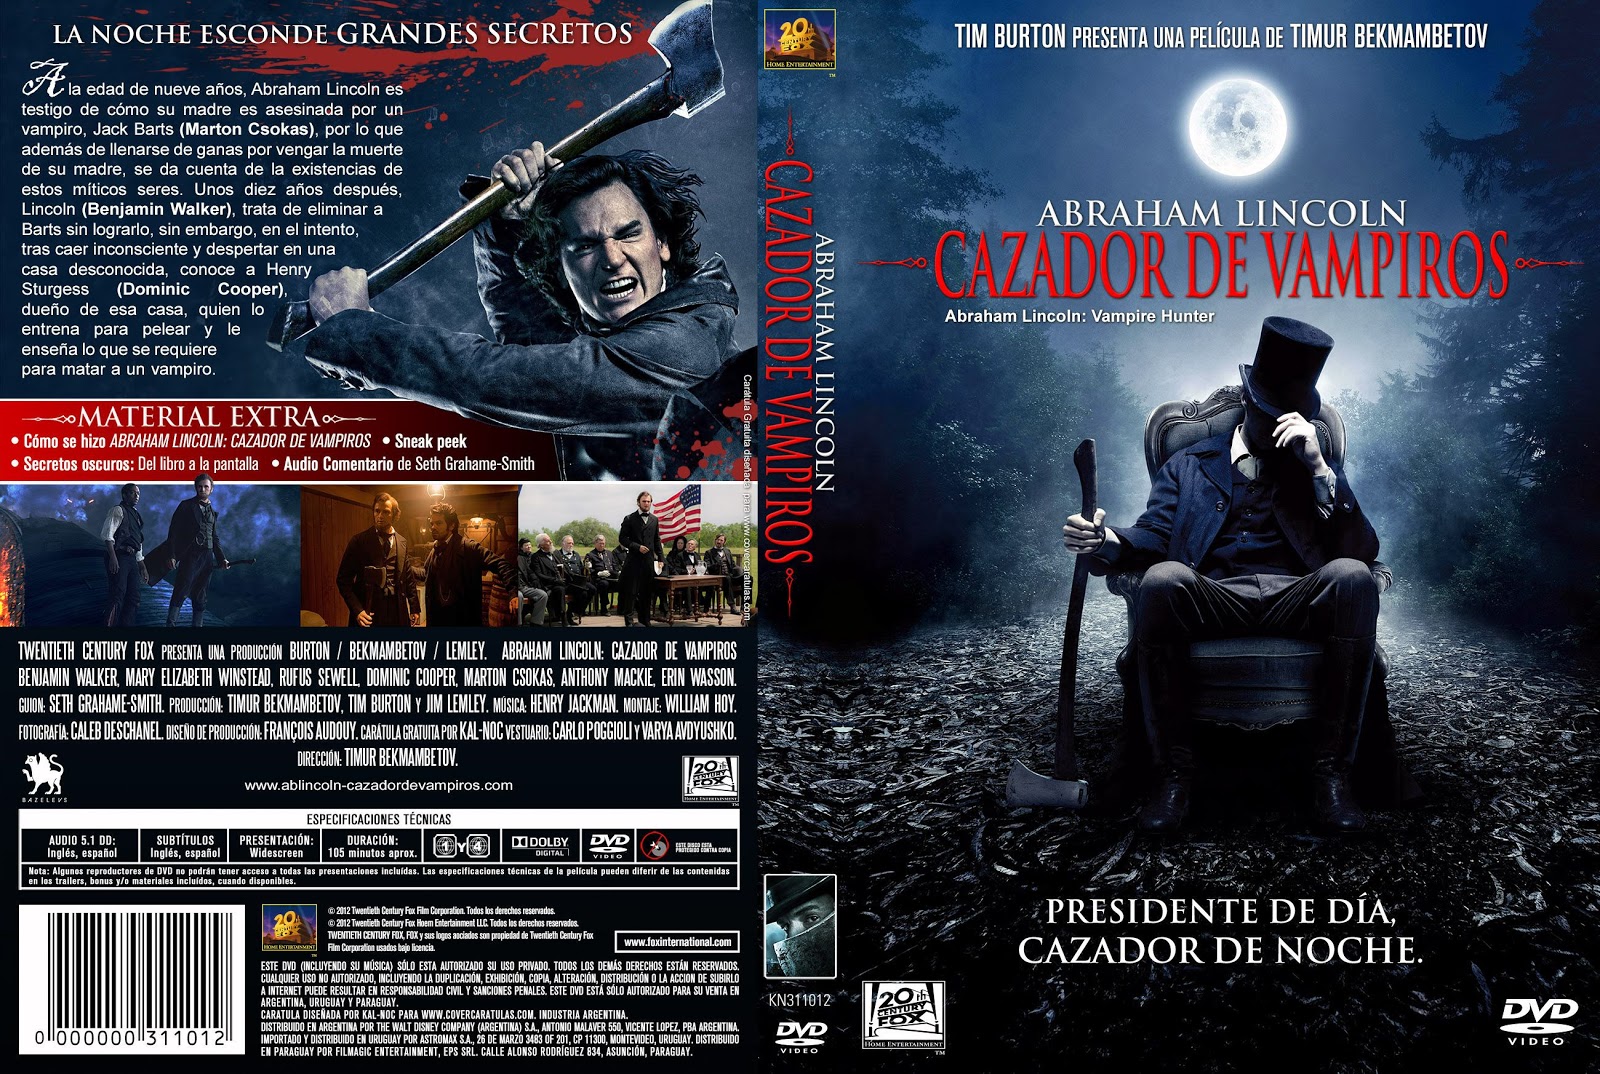 Ver Pelicula Abraham Lincoln Cazador De Vampiros Online En Espanol Hd